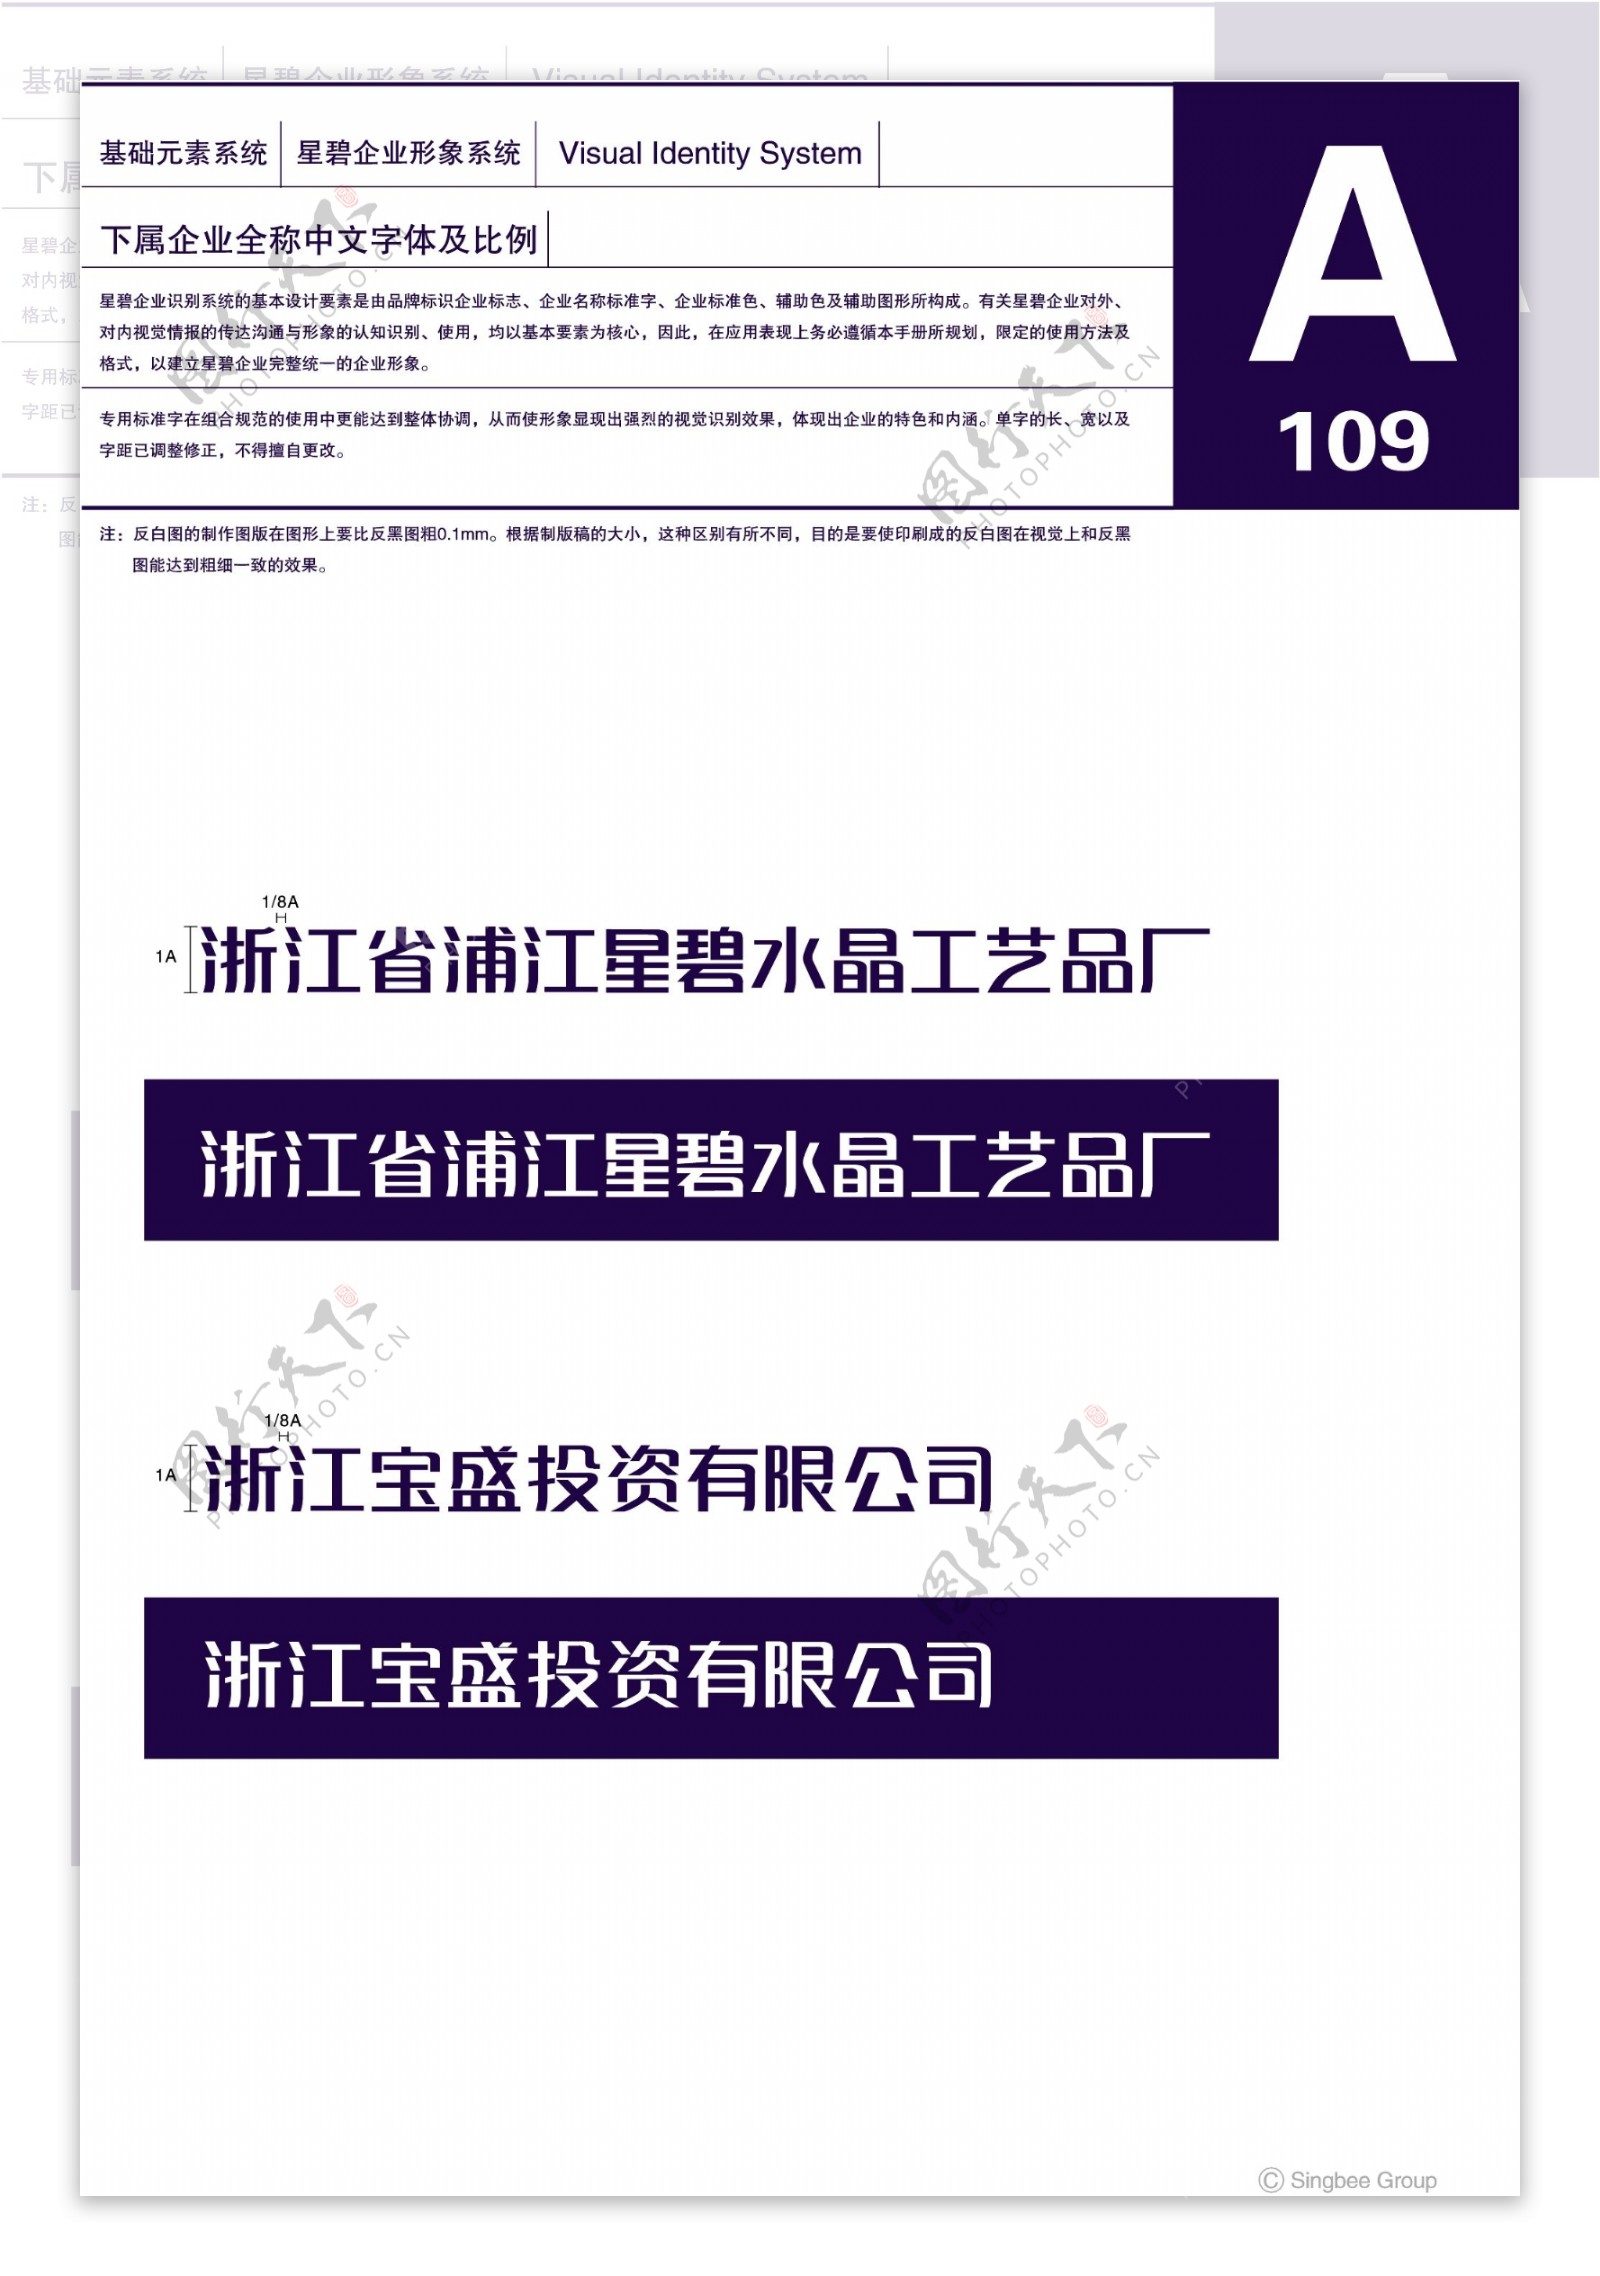 杭州星碧水晶VI矢量CDR文件VI设计VI宝典企业基础元素系统规范